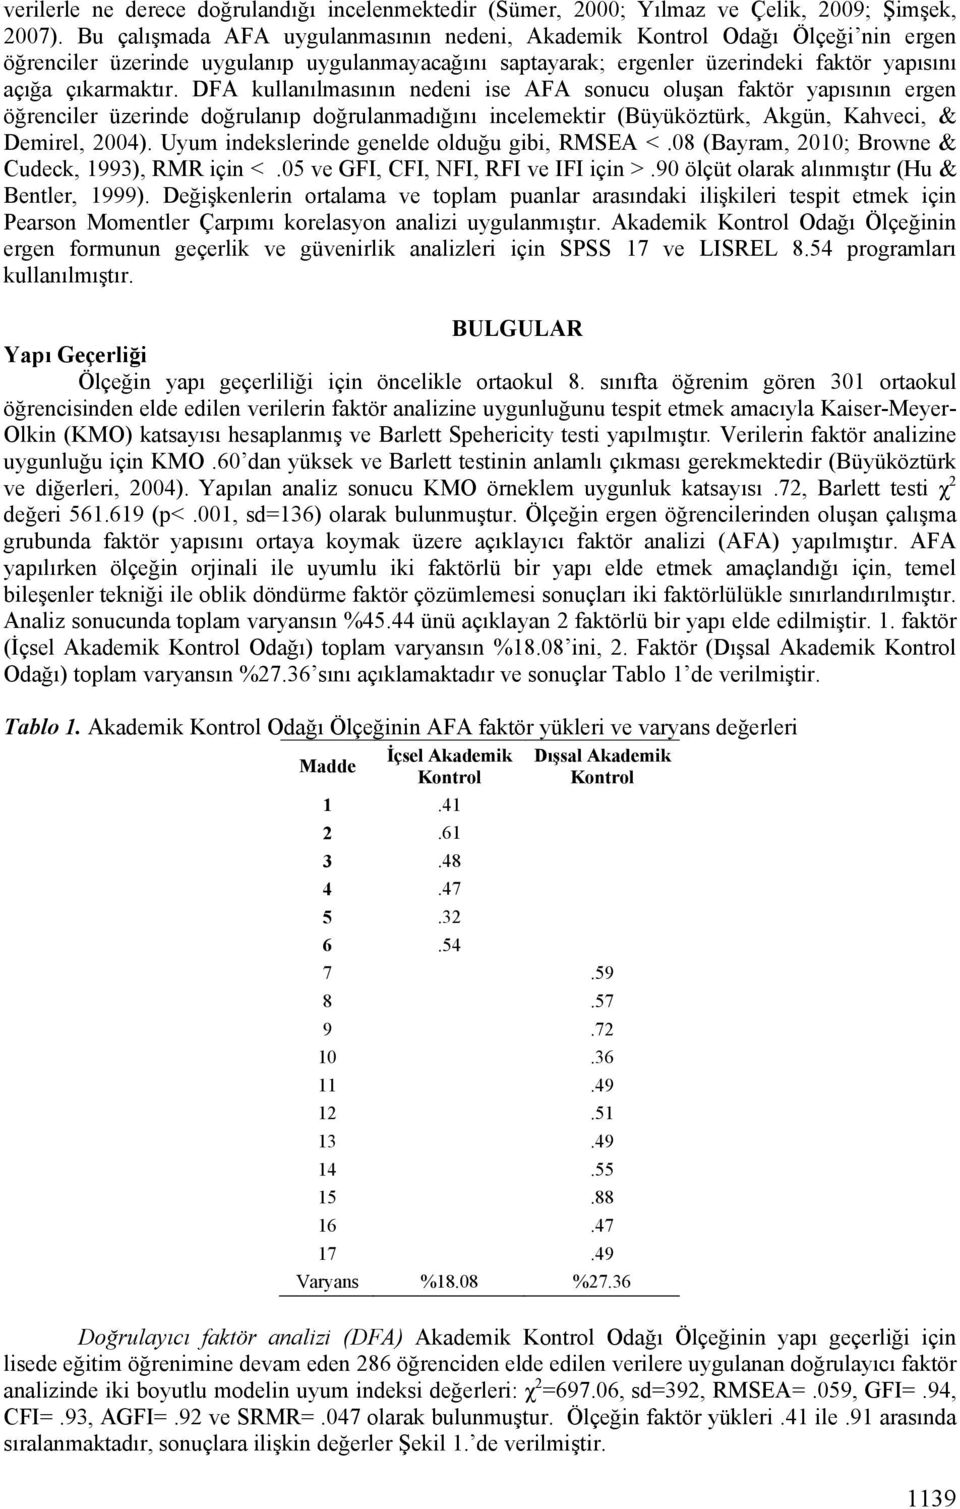 DFA kullanılmasının nedeni ise AFA sonucu oluşan faktör yapısının ergen öğrenciler üzerinde doğrulanıp doğrulanmadığını incelemektir (Büyüköztürk, Akgün, Kahveci, & Demirel, 2004).